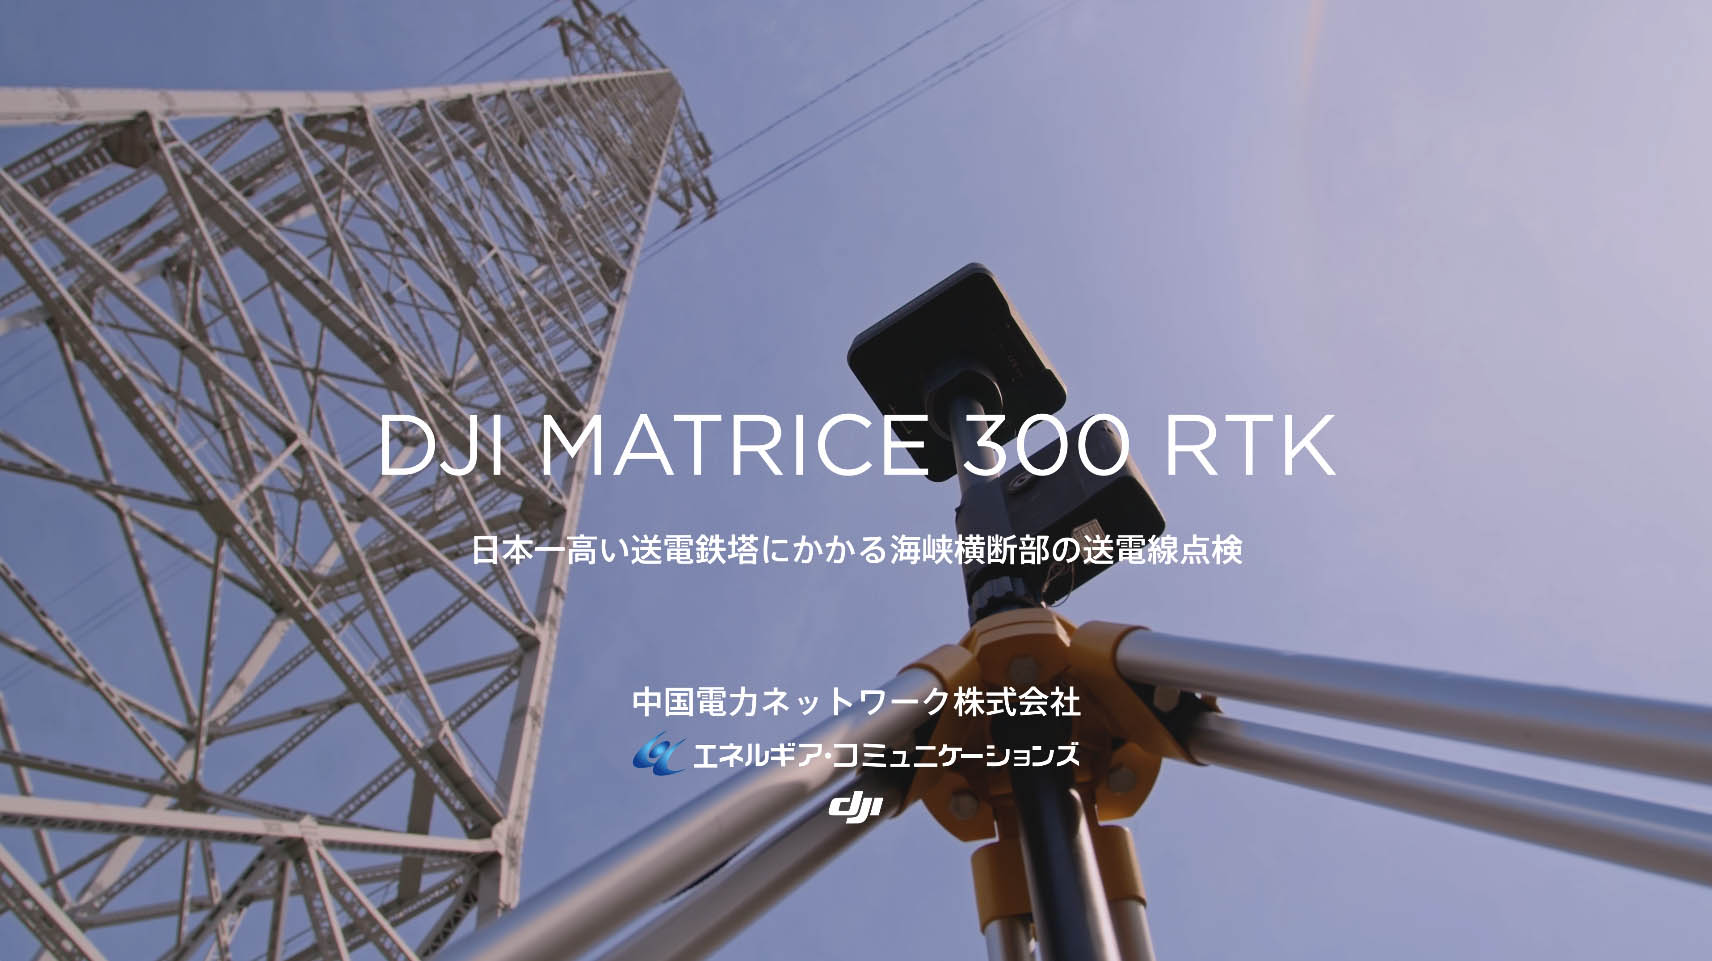 Matrice 300 RTK@oTFDJI JAPANvX[X